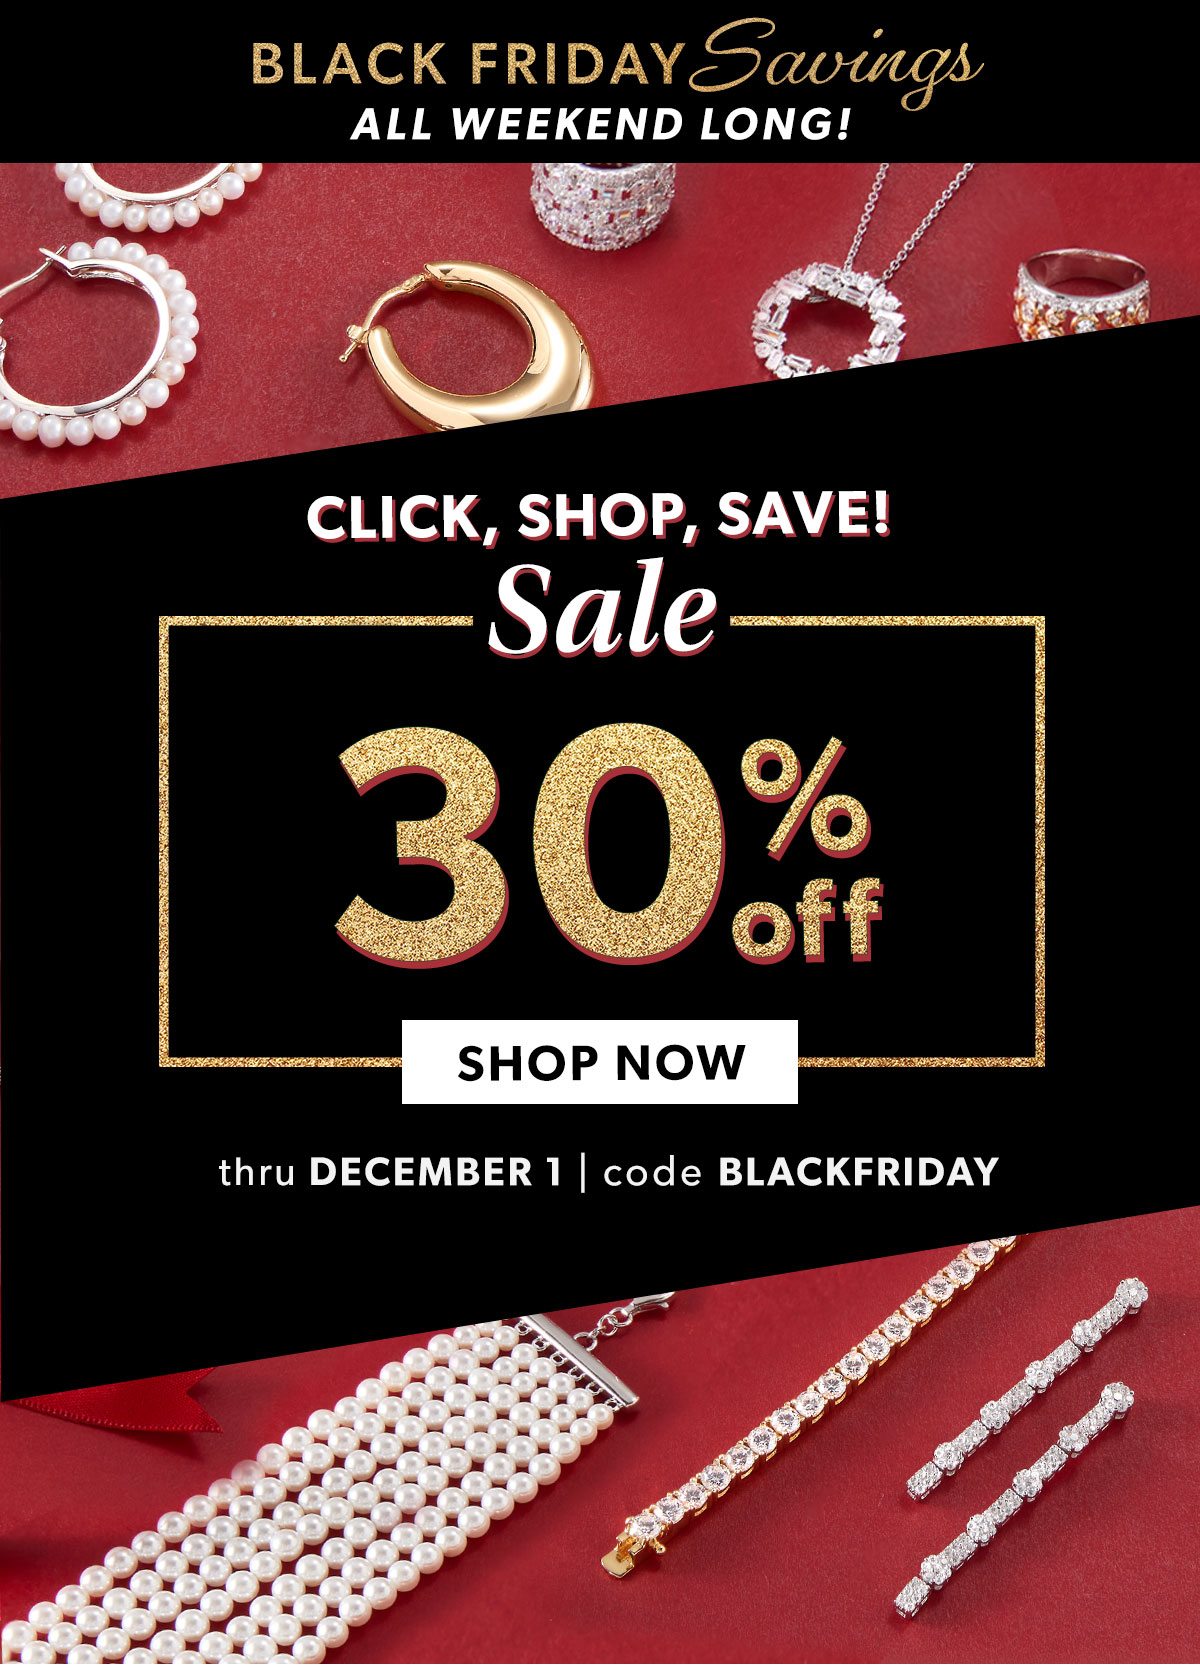 Click, Shop, Save! 30% Off. Shop Now